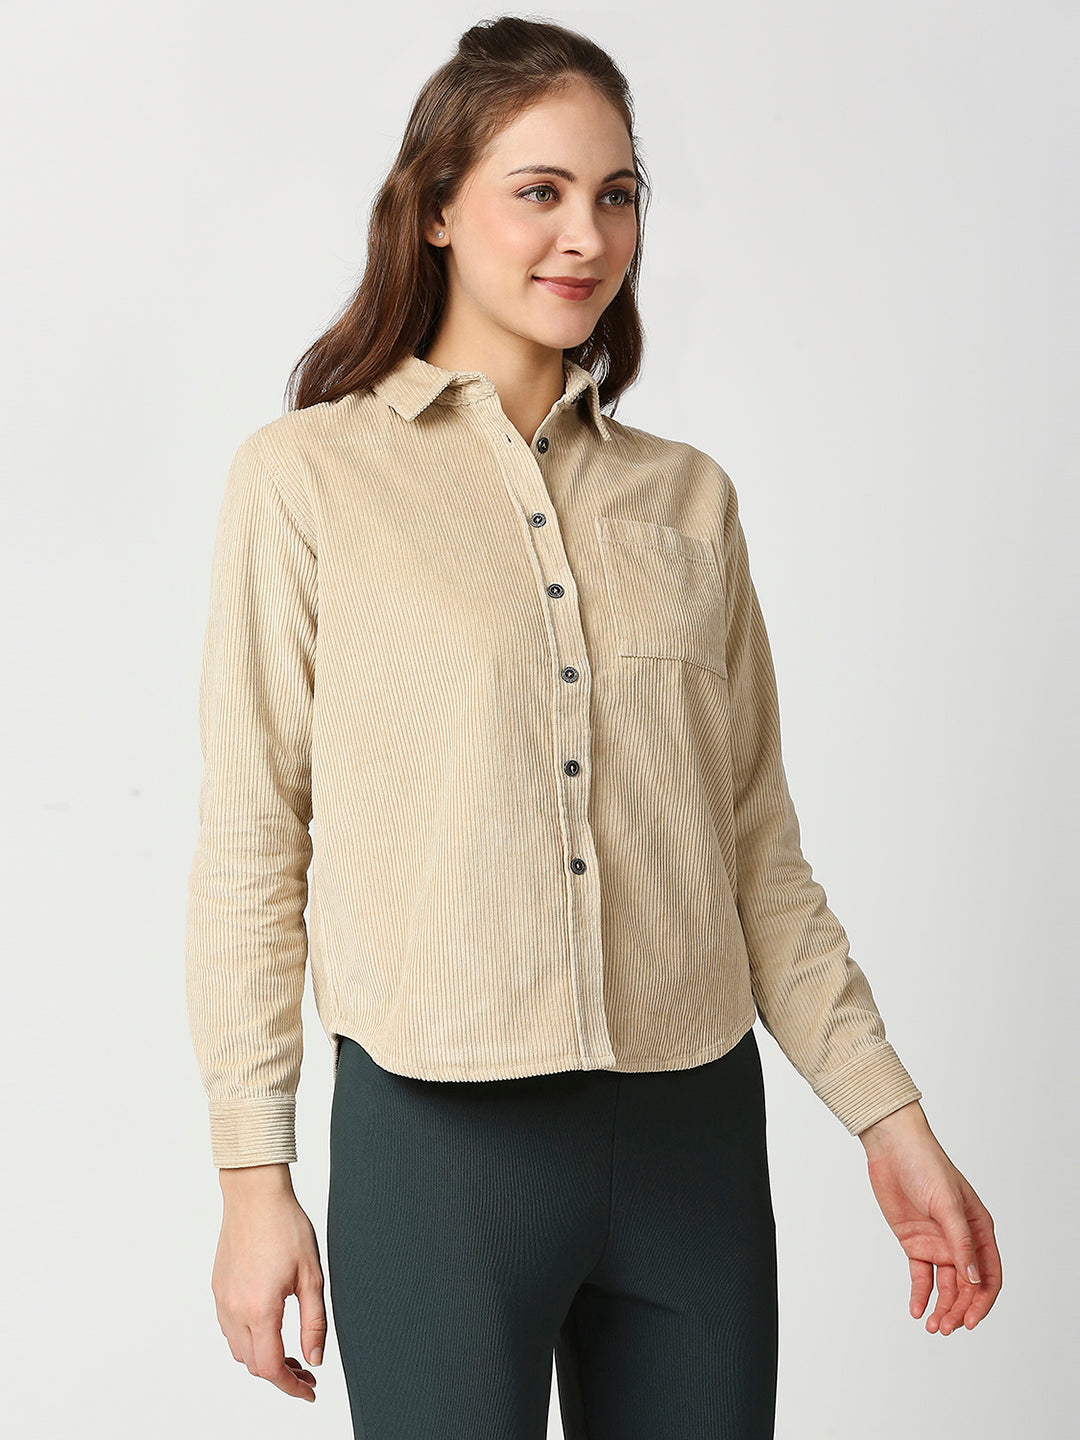 Buy Blamblack Women's Beige Color Baggy Full Sleeves Shirt